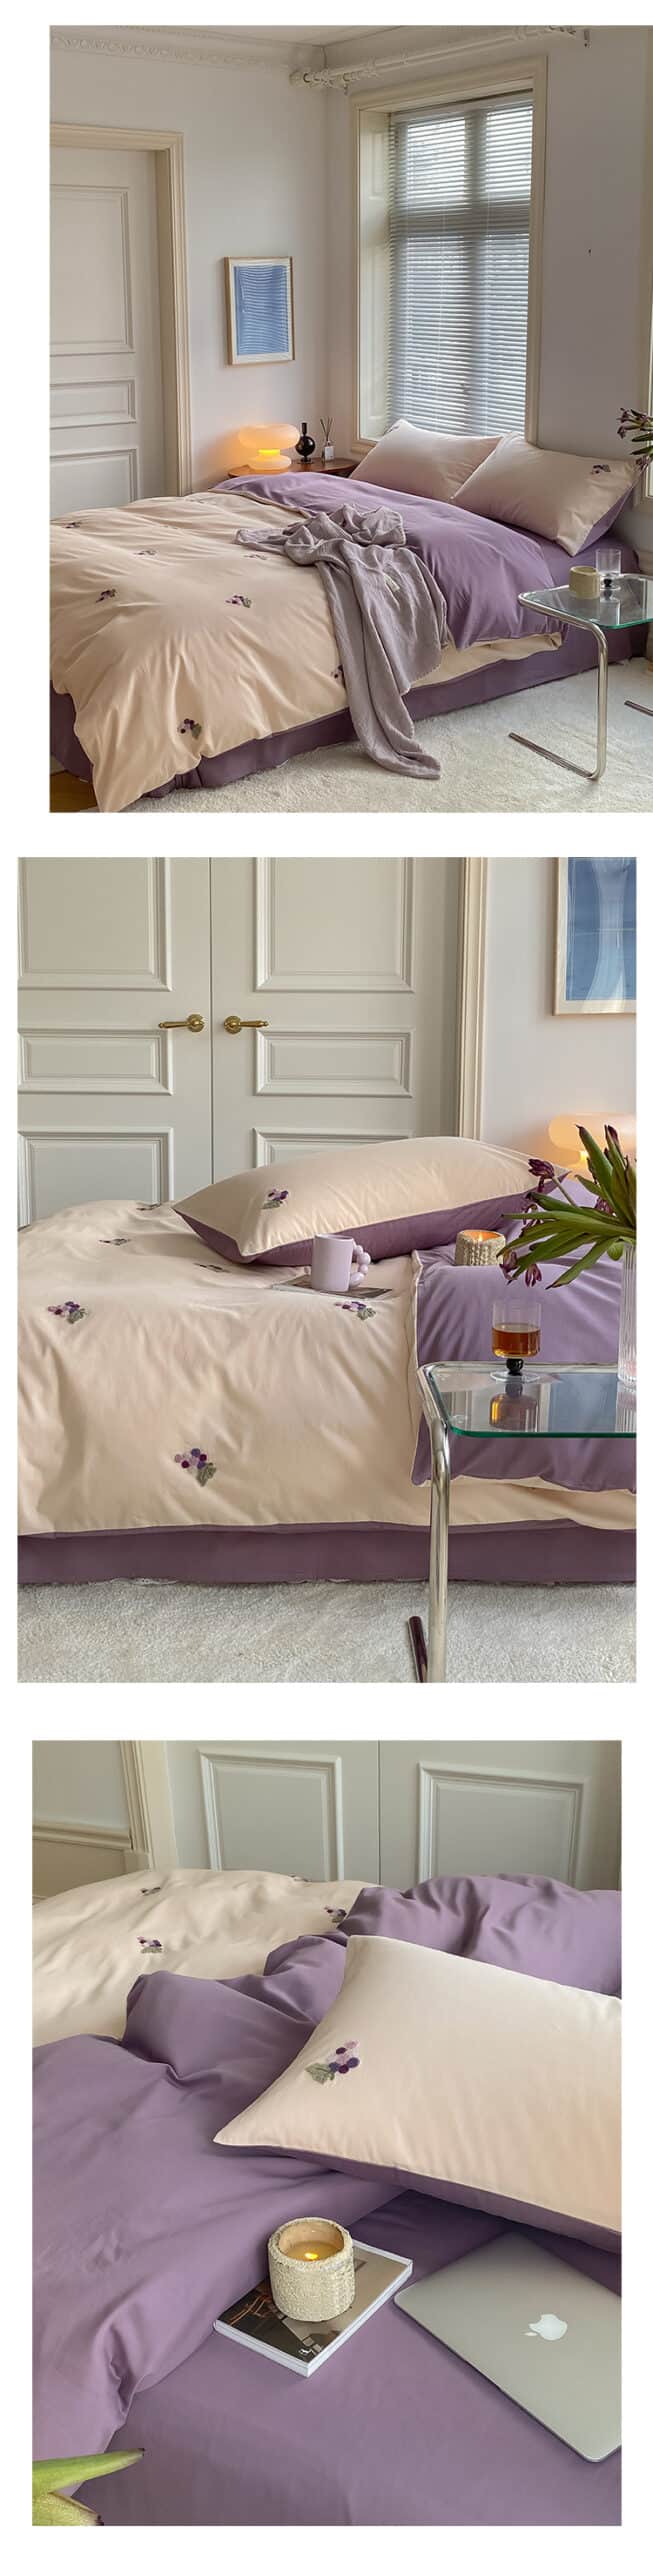 Bộ ga giường cotton họa tiết hoa thêu nổi MM5545 16